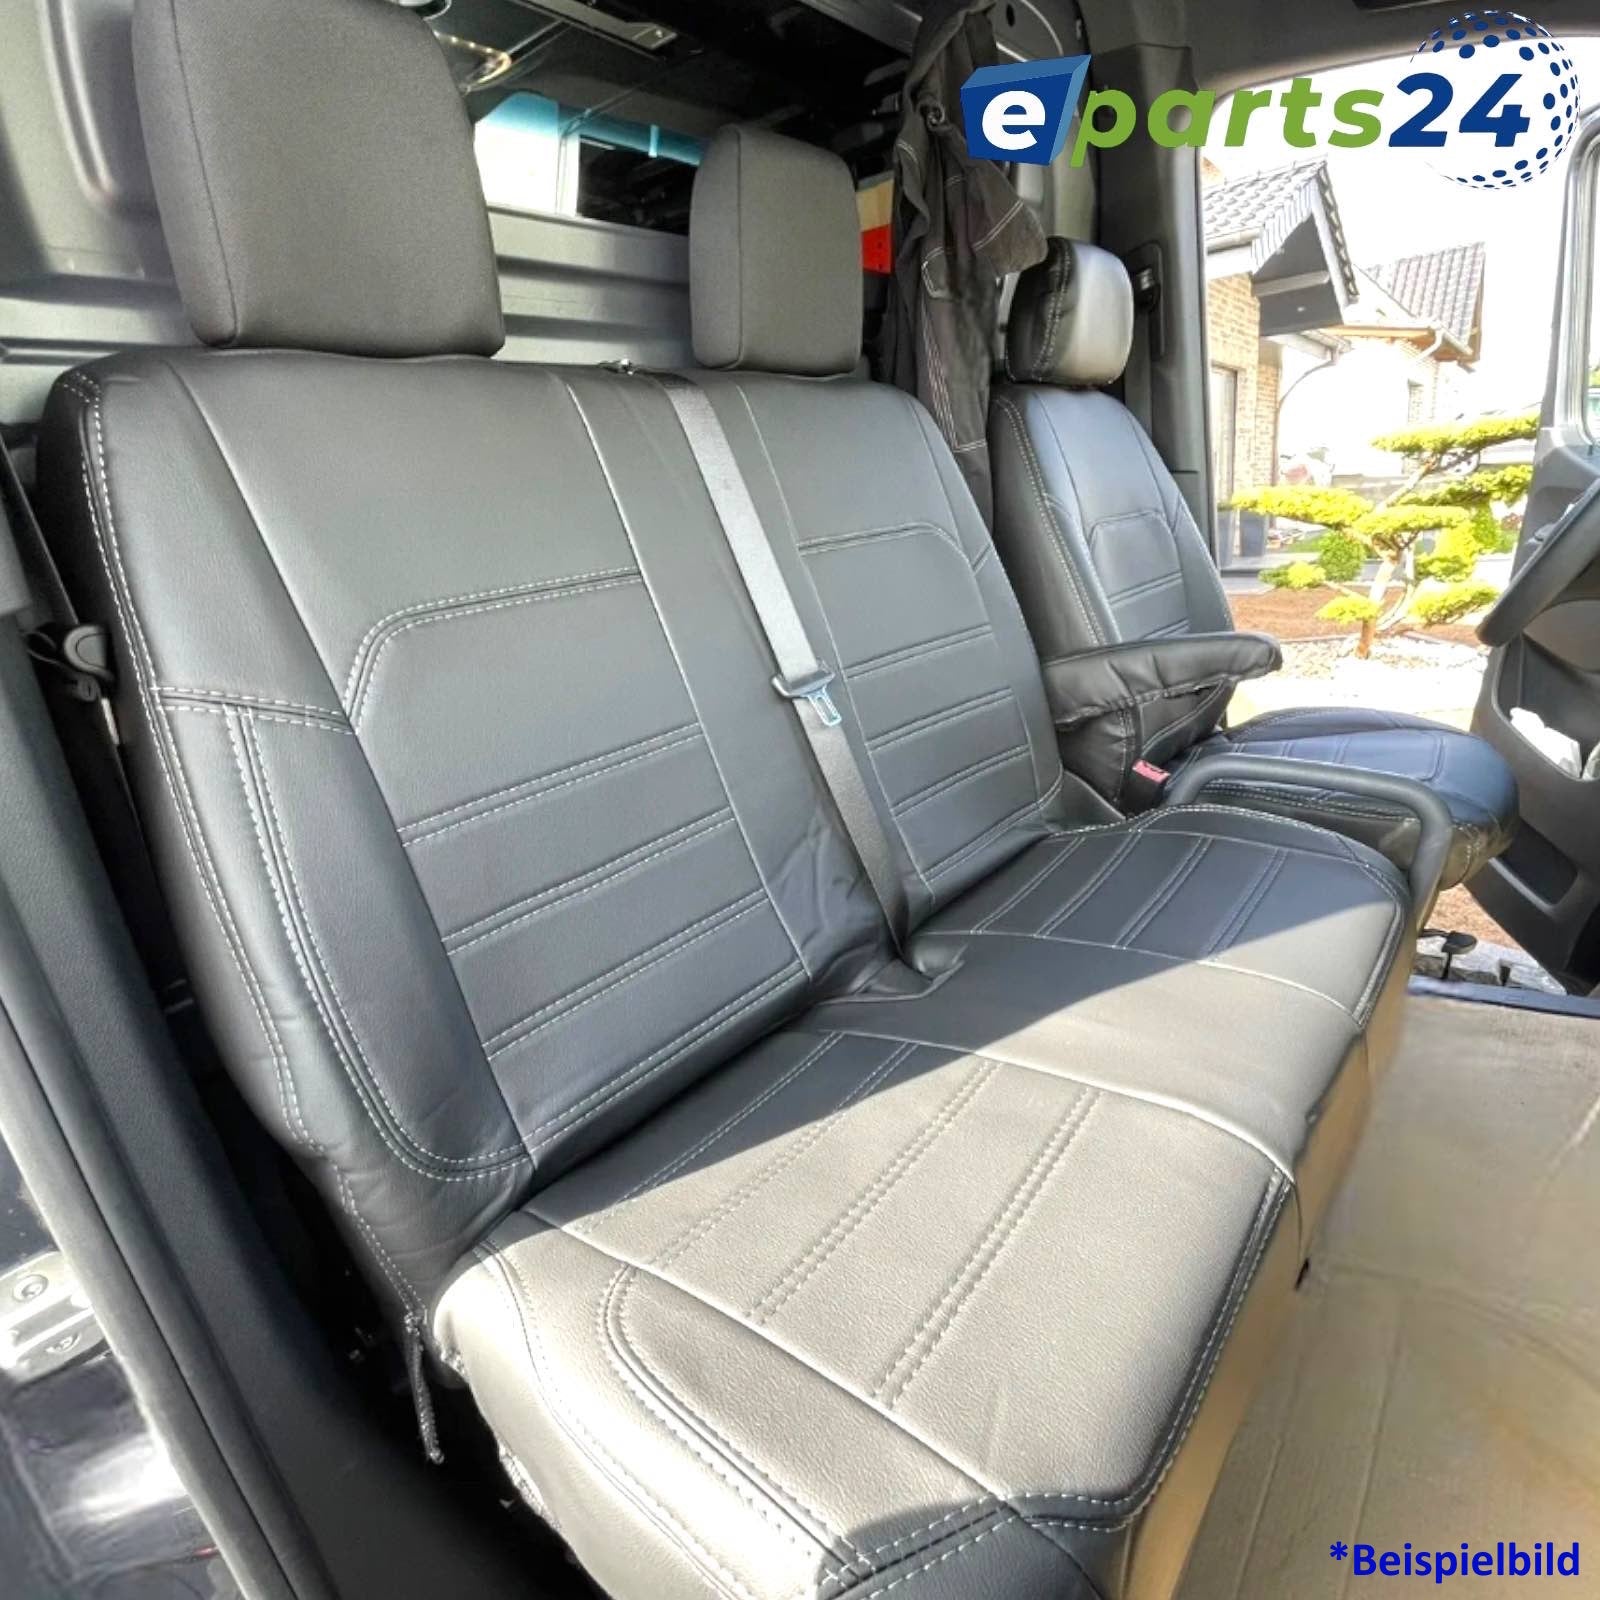 Autositzbezüge Maß Schonbezüge Sitzbezug für Volkswagen Caddy IV